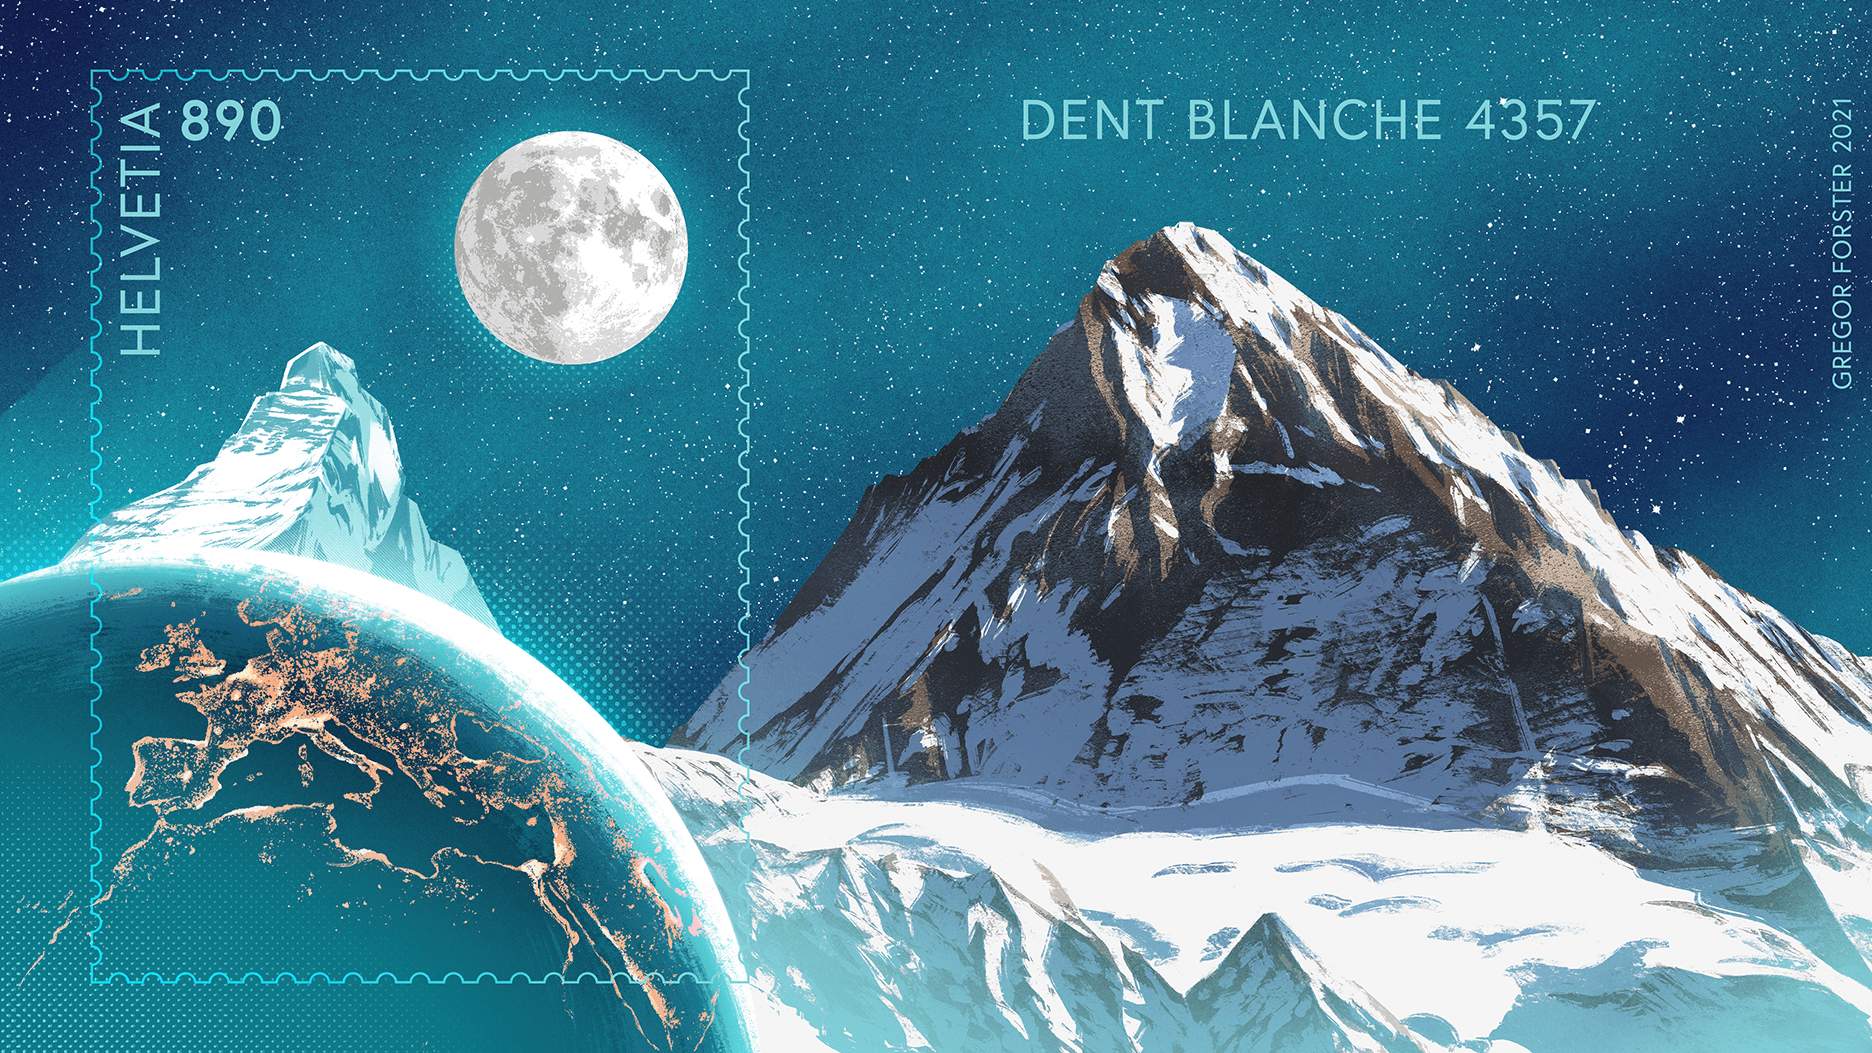 Dent Blanche